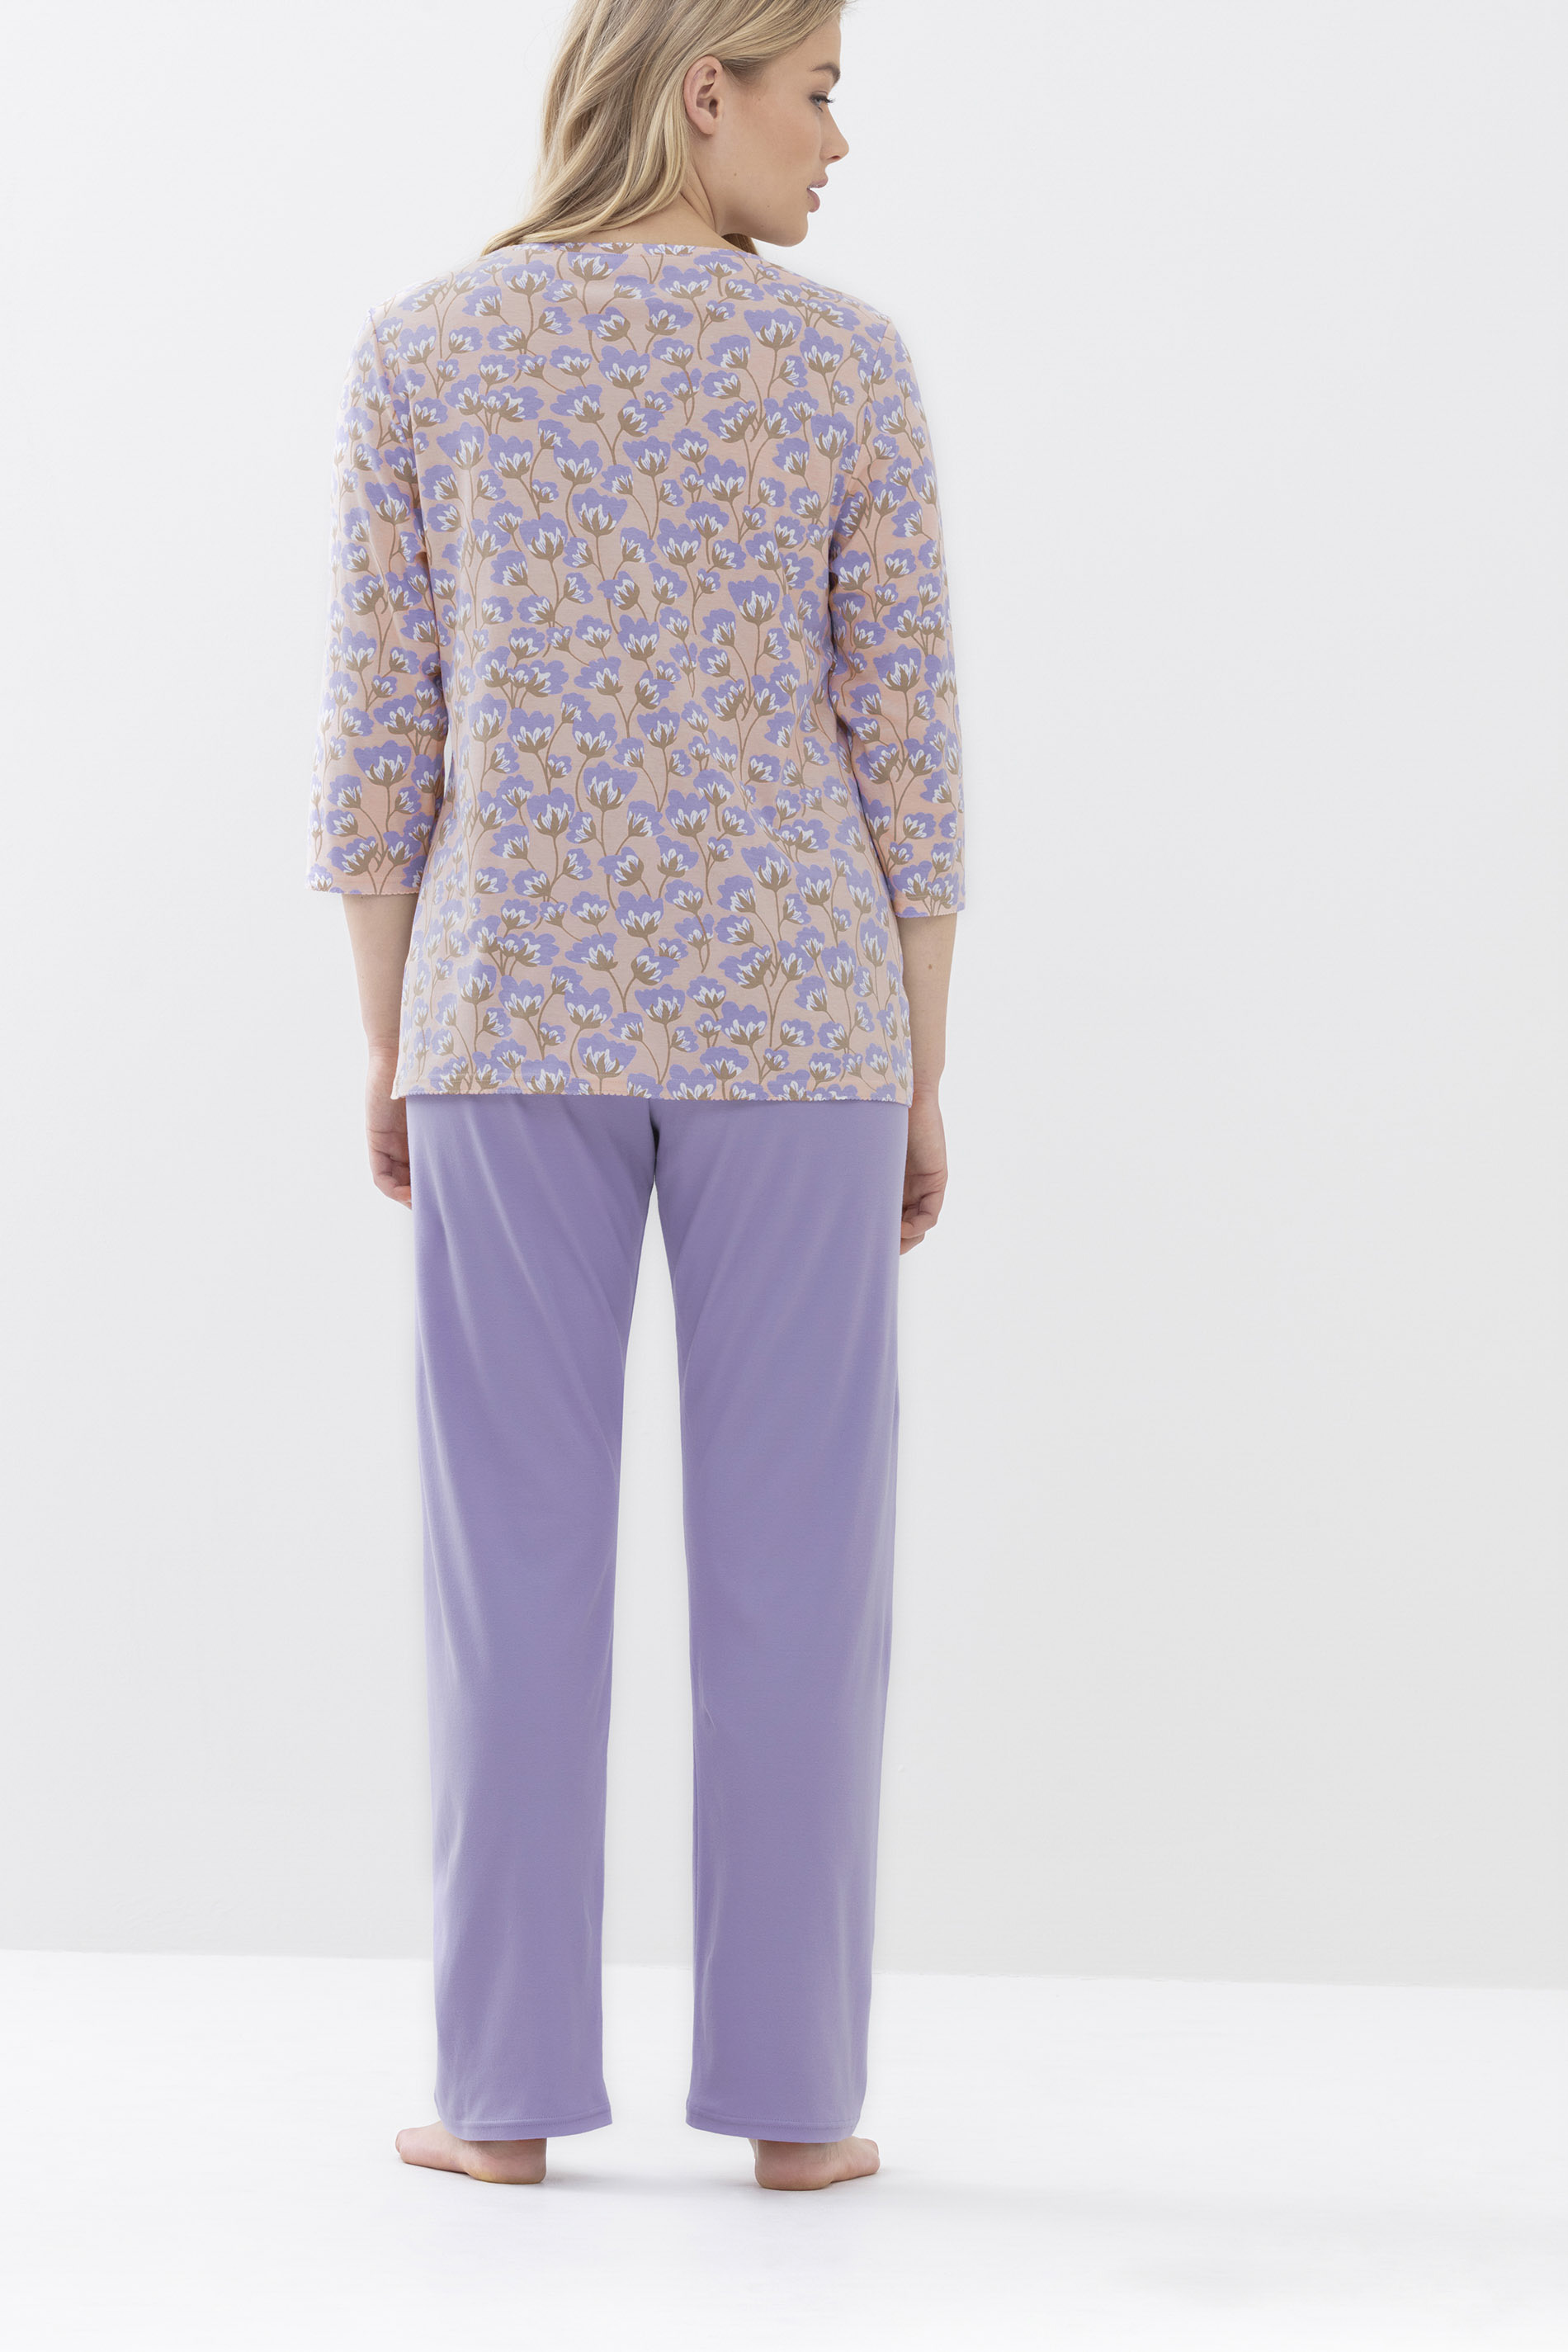 Pyjamas Lilac Serie Zera Rear View | mey®